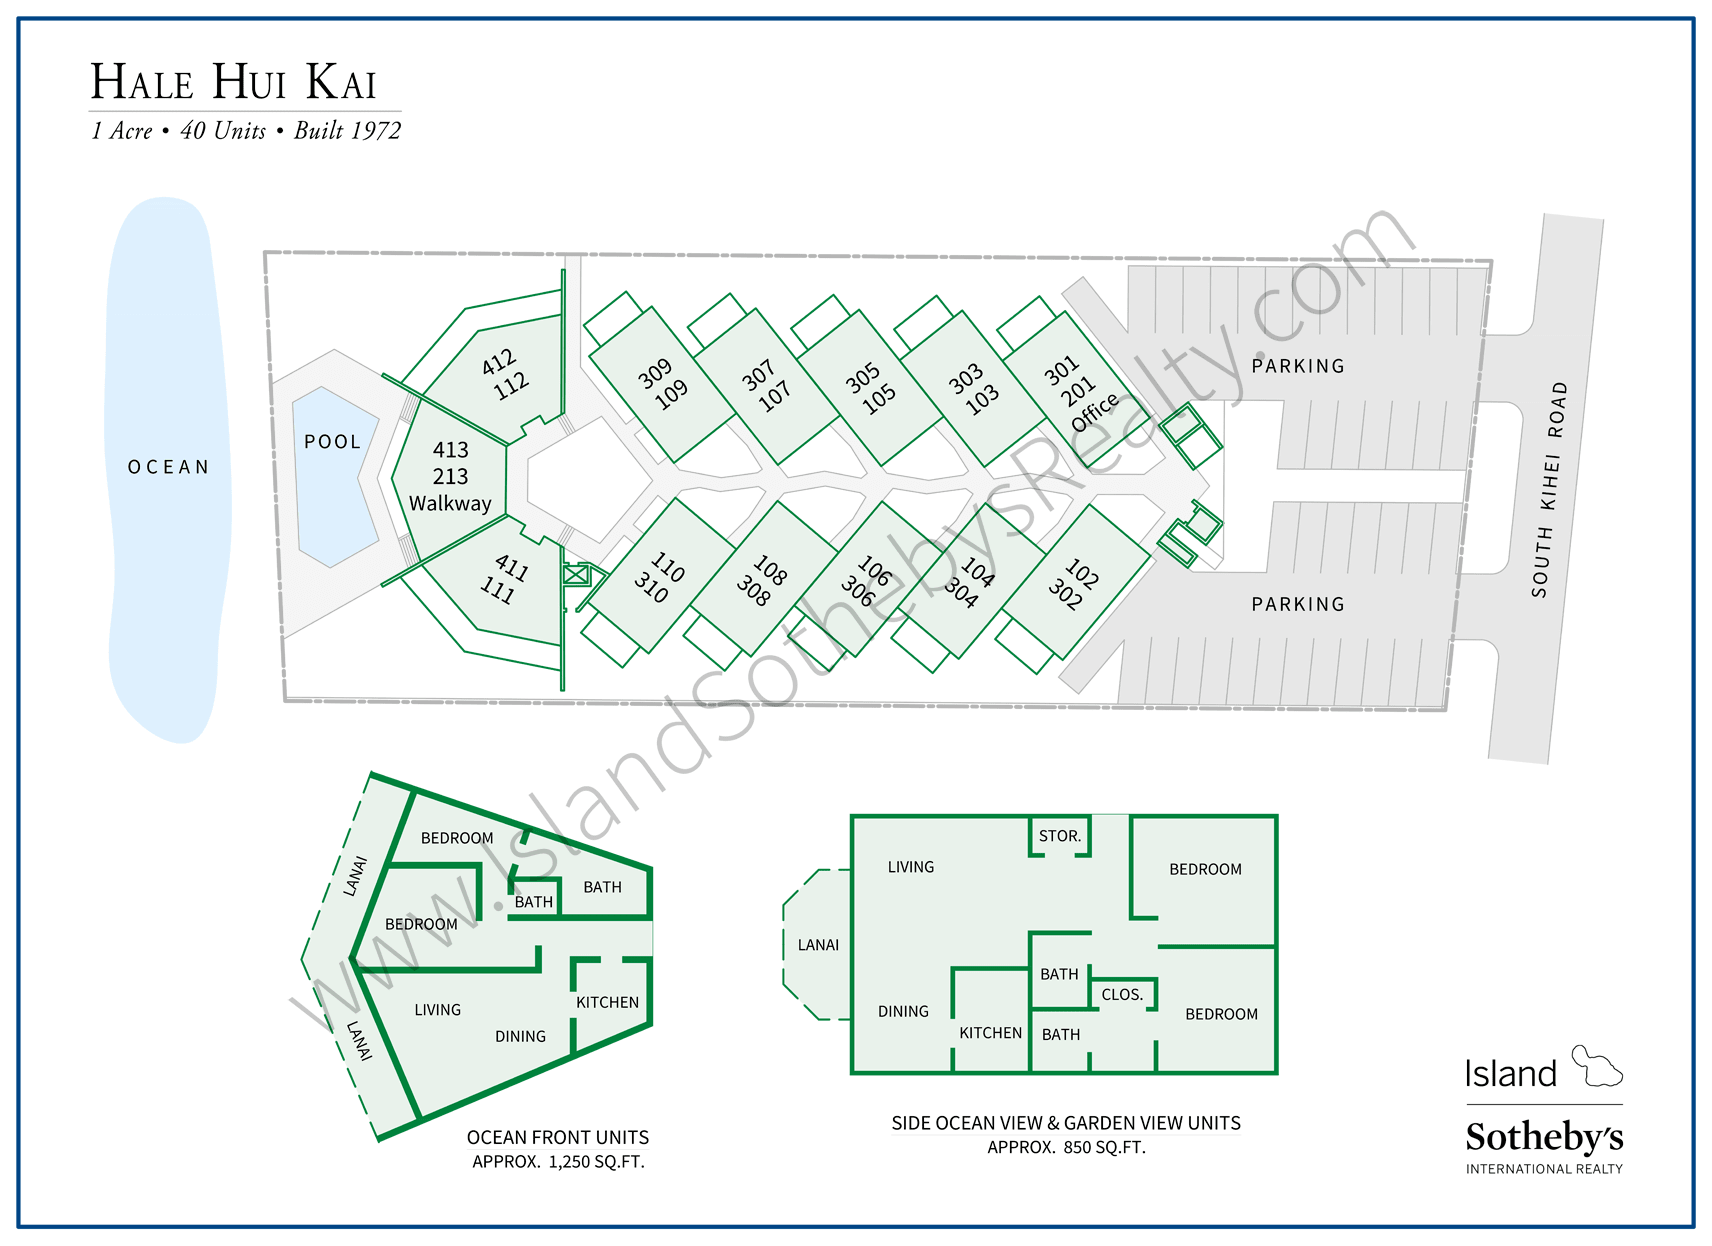 Hale Hui Kai Map 2019